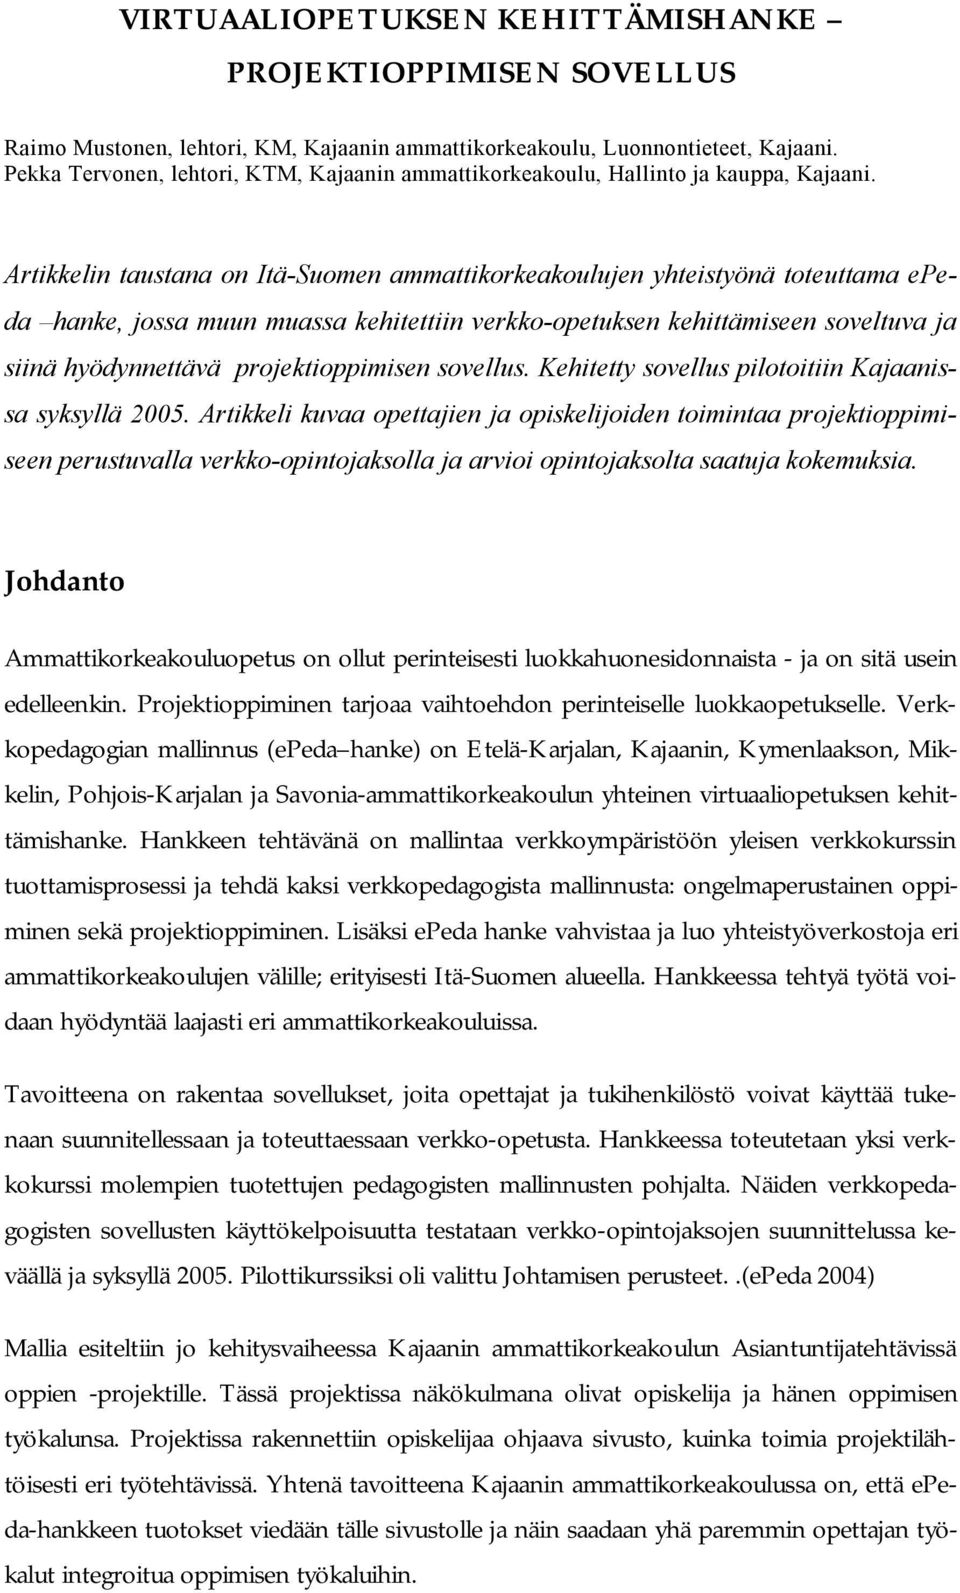 Artikkelin taustana on Itä Suomen ammattikorkeakoulujen yhteistyönä toteuttama epeda hanke, jossa muun muassa kehitettiin verkko opetuksen kehittämiseen soveltuva ja siinä hyödynnettävä